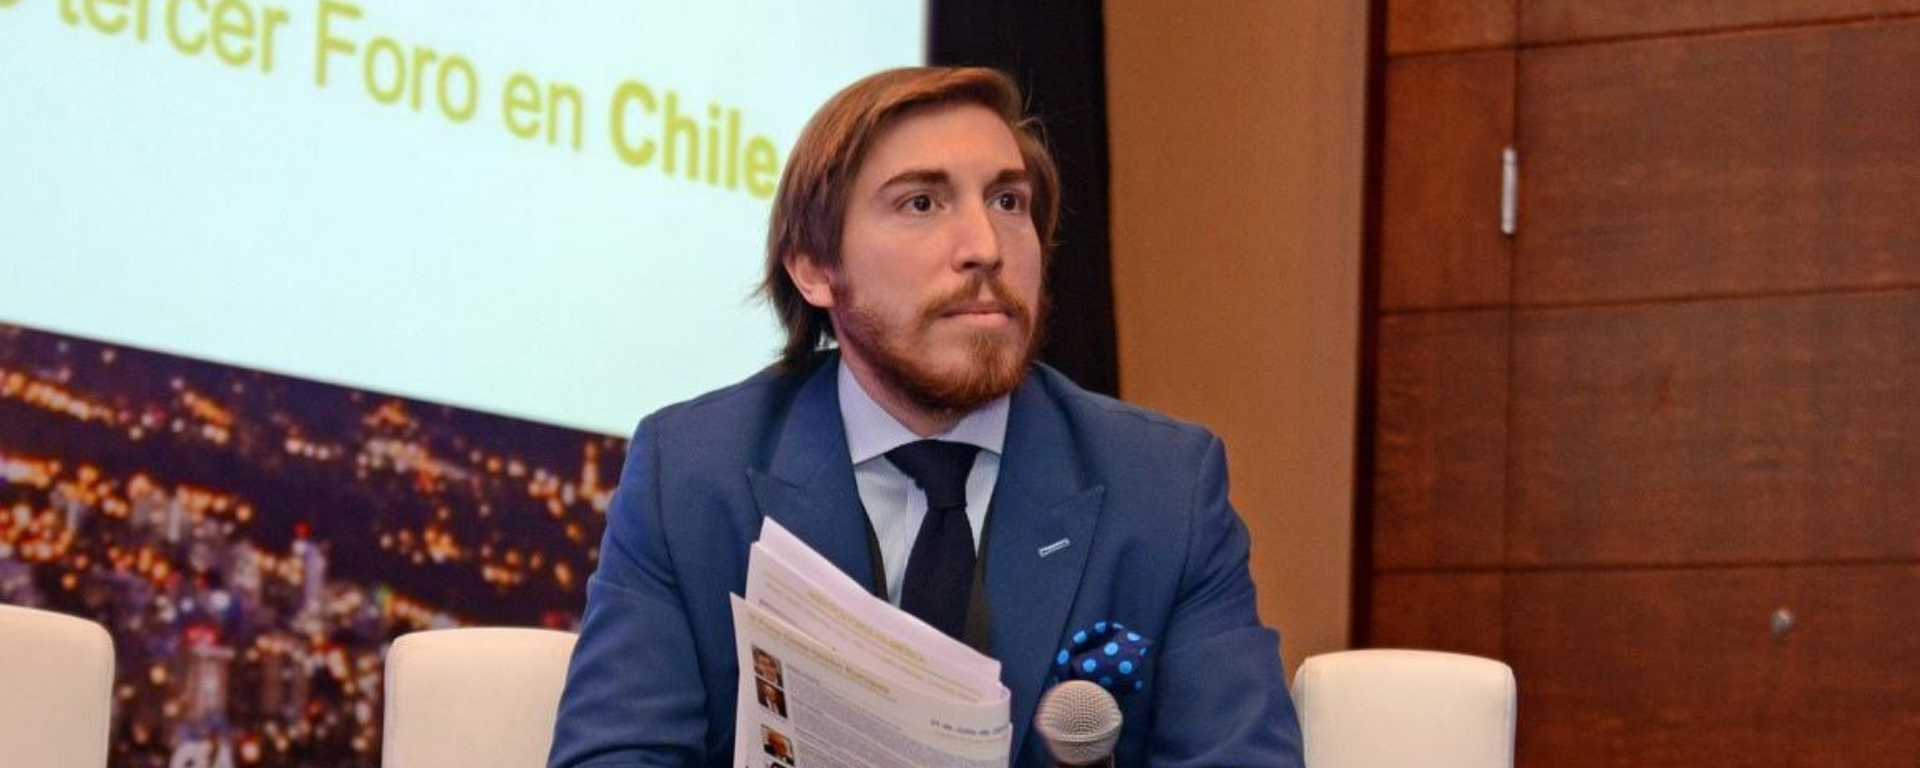 Carlos Loaiza en un panel en Chile.